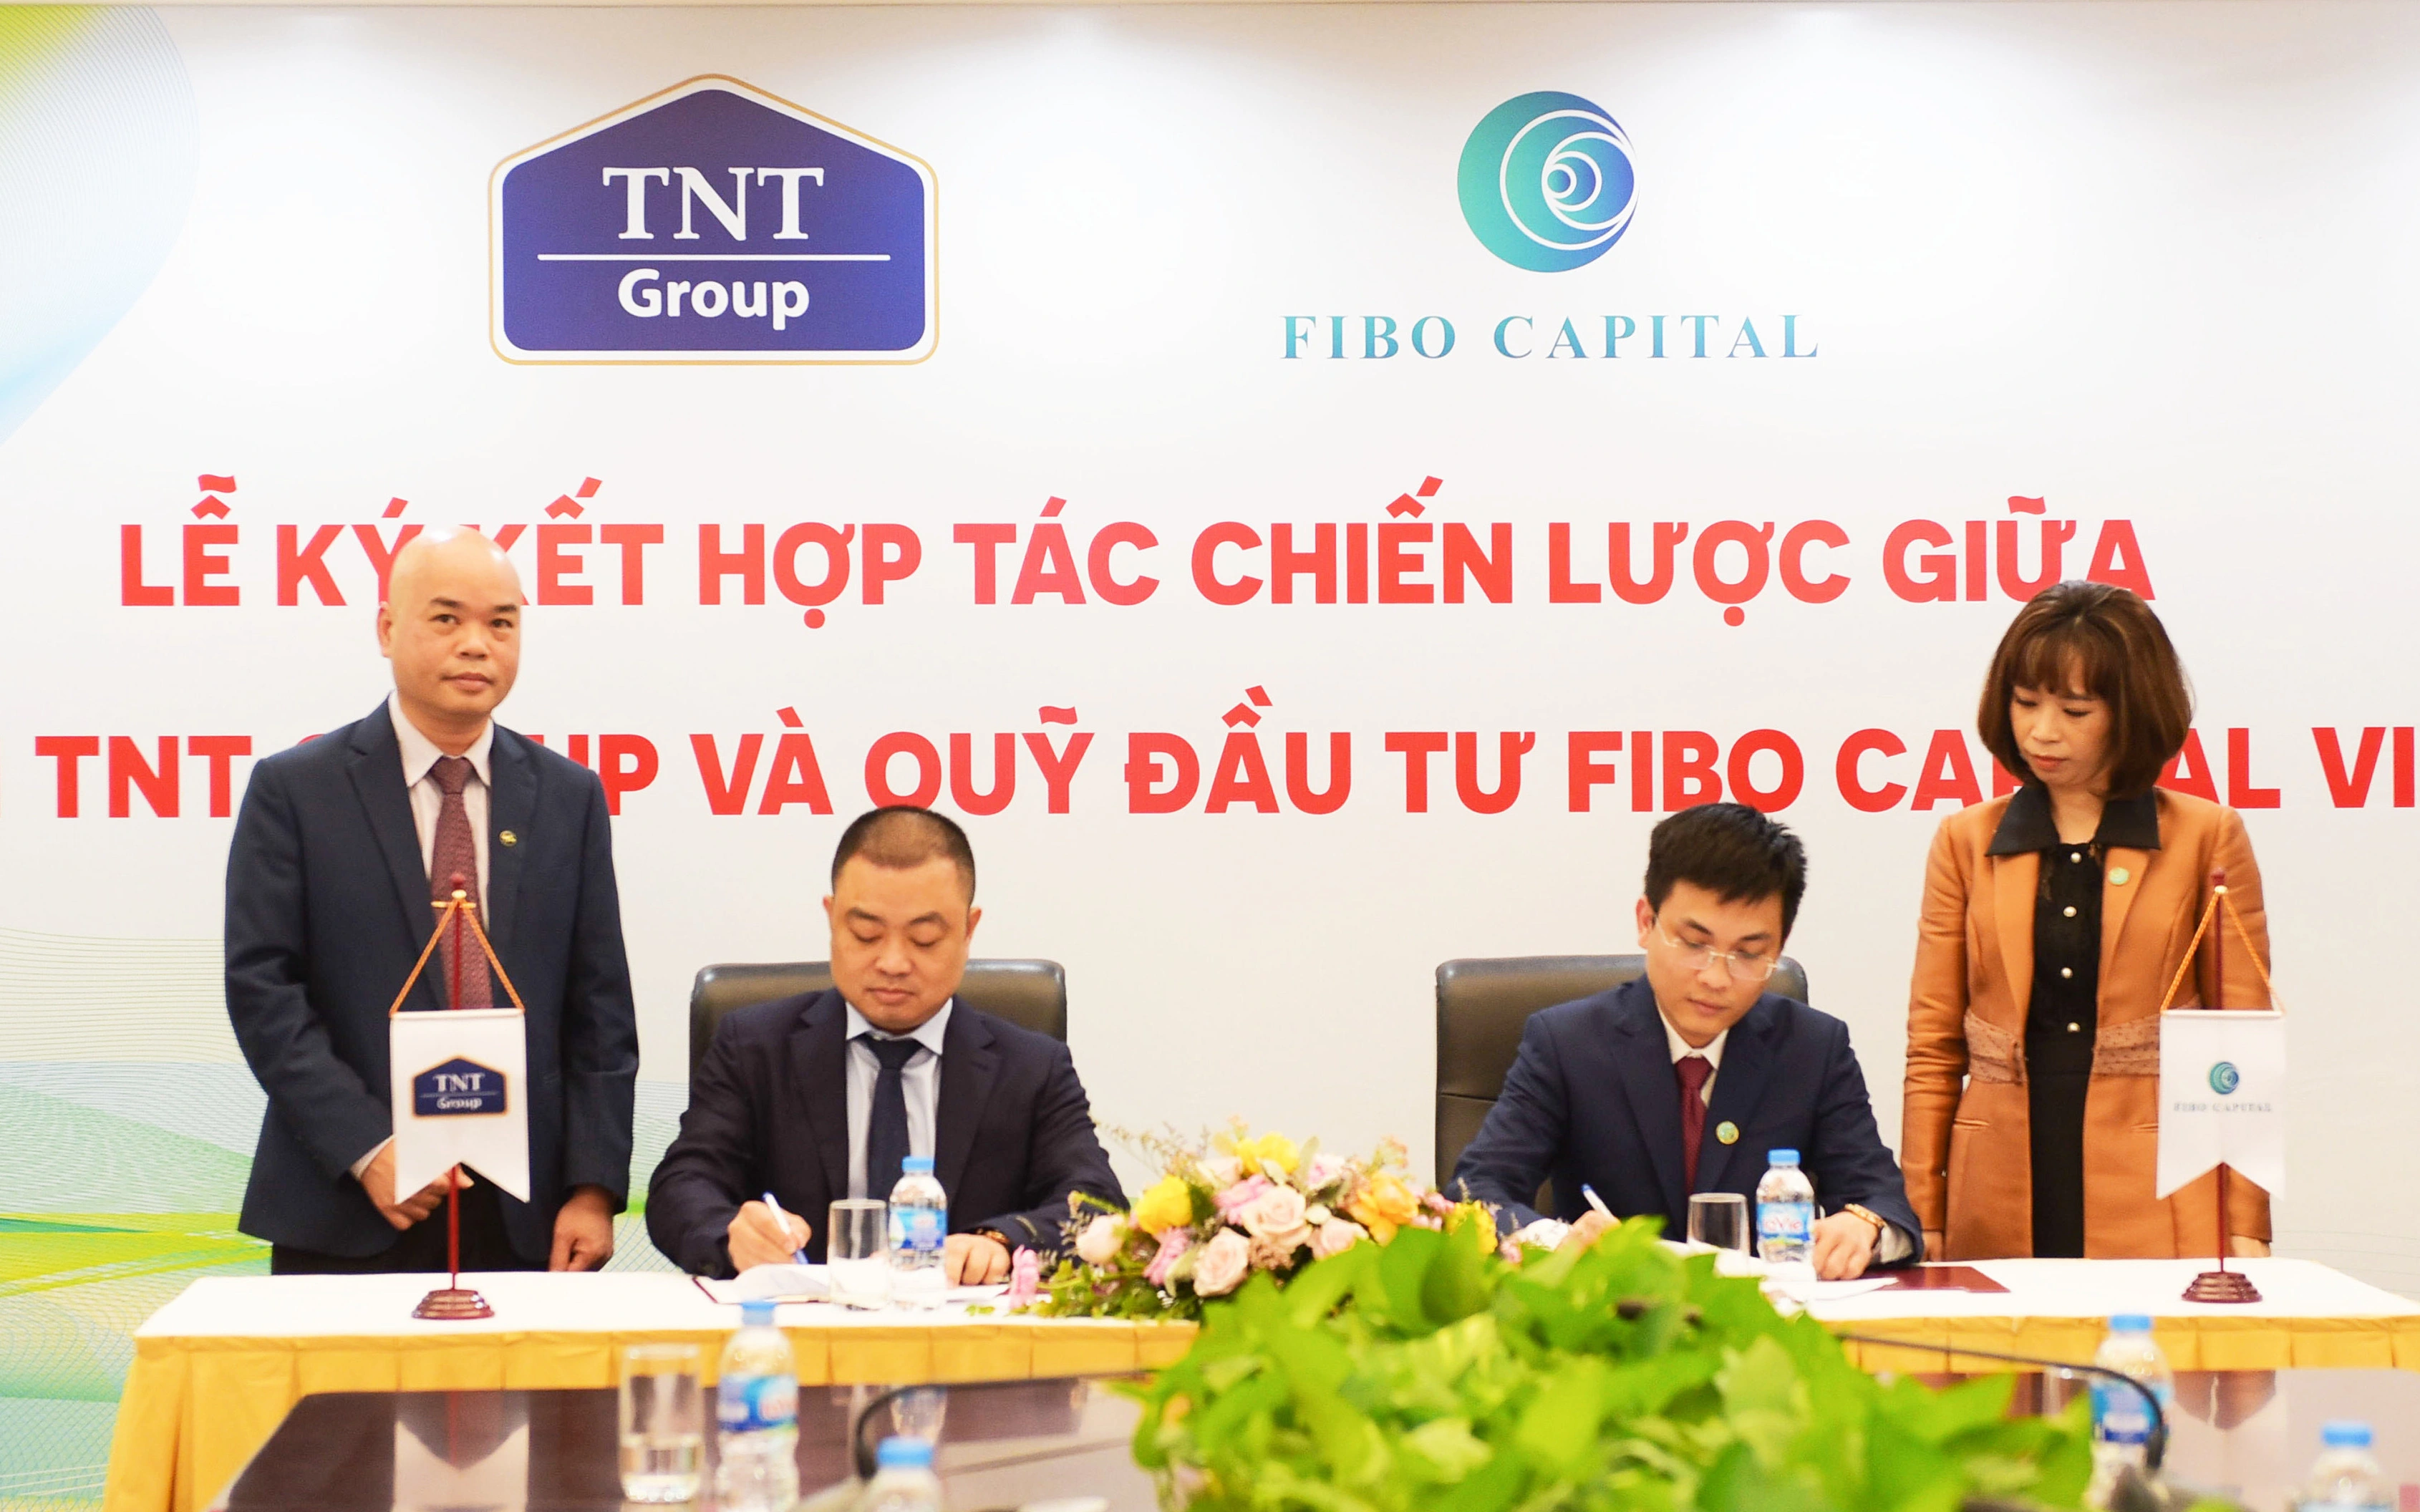 Fibo Capital Việt Nam ký kết hợp tác chiến lược với Tập đoàn TNT (HOSE: TNT)